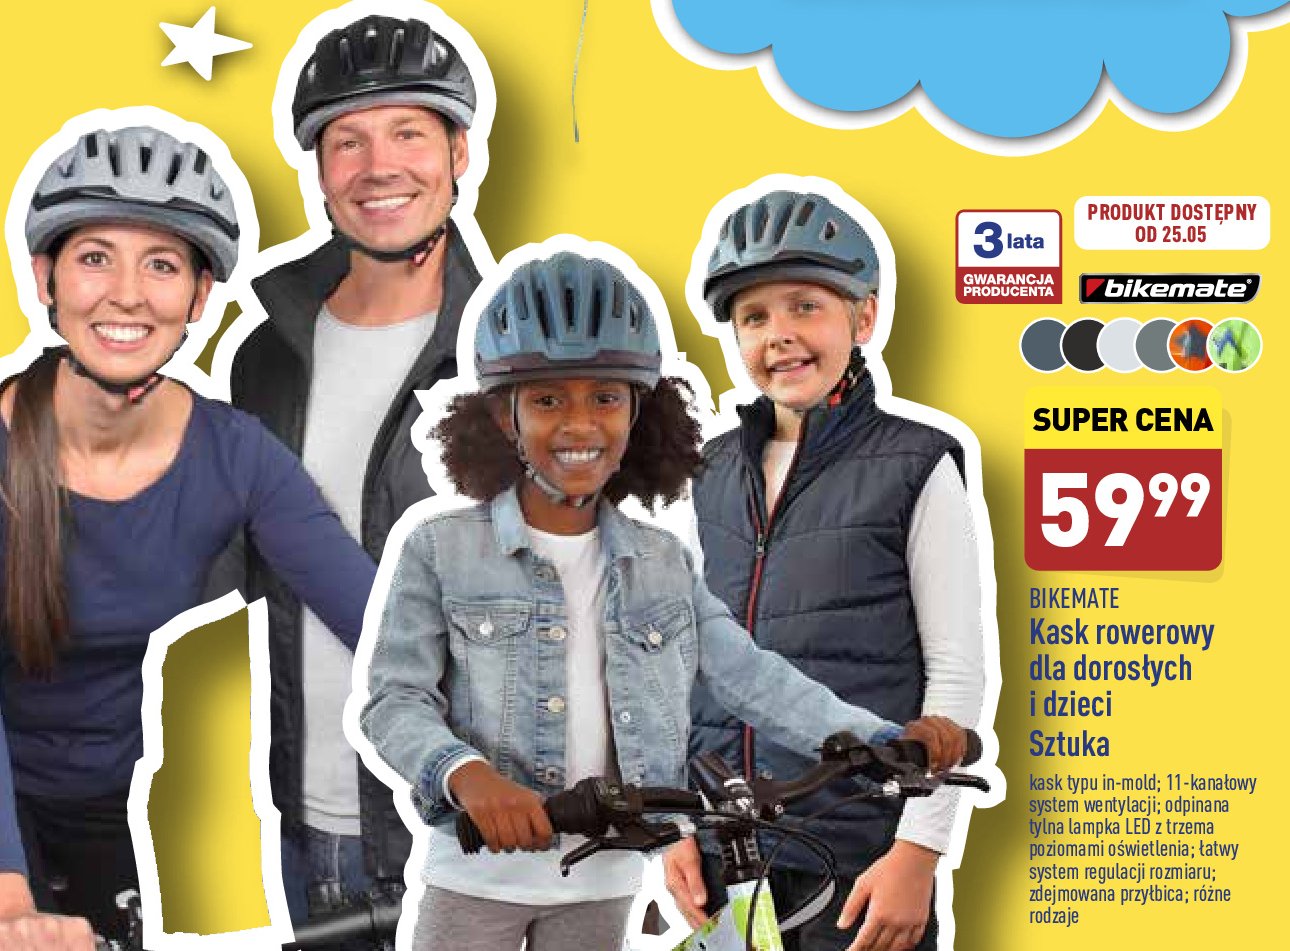 Kask rowerowy dla dzieci BIKEMATE promocje